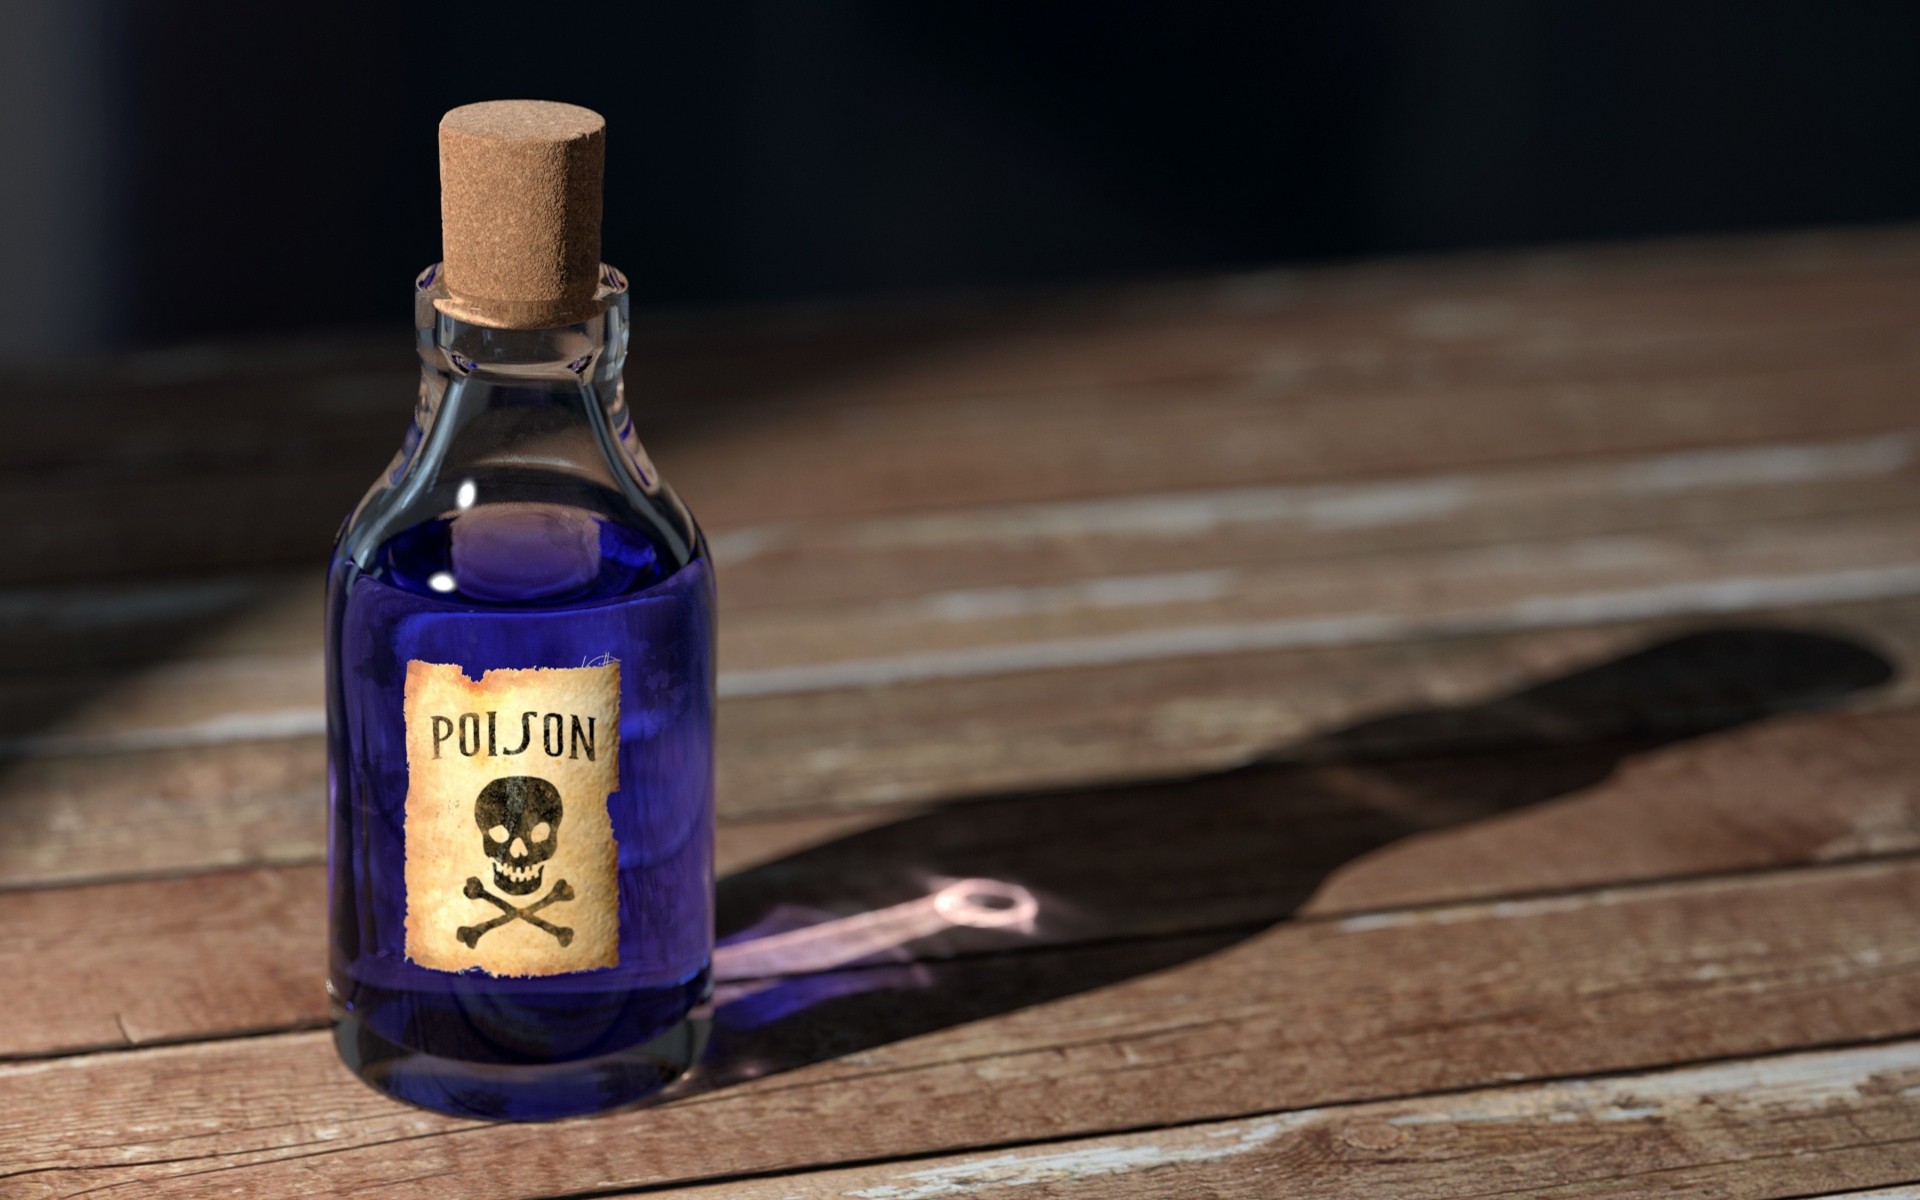 Poison, Wood, Bottles Wallpaper